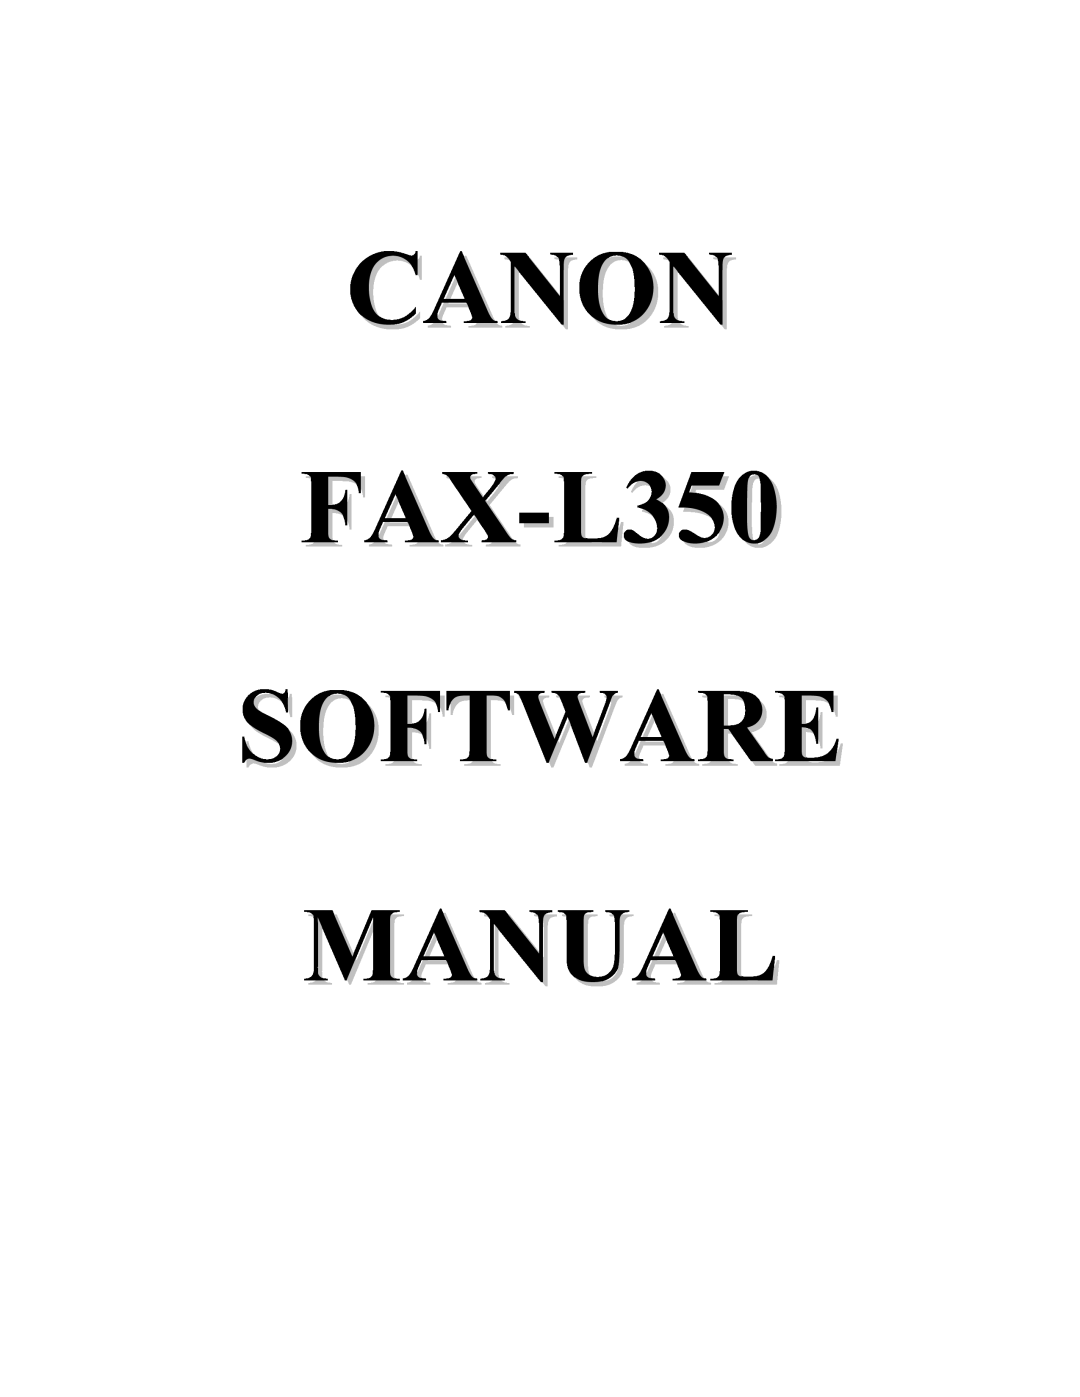 Canon manual CANON FAX-L350 SOFTWARE MANUAL 